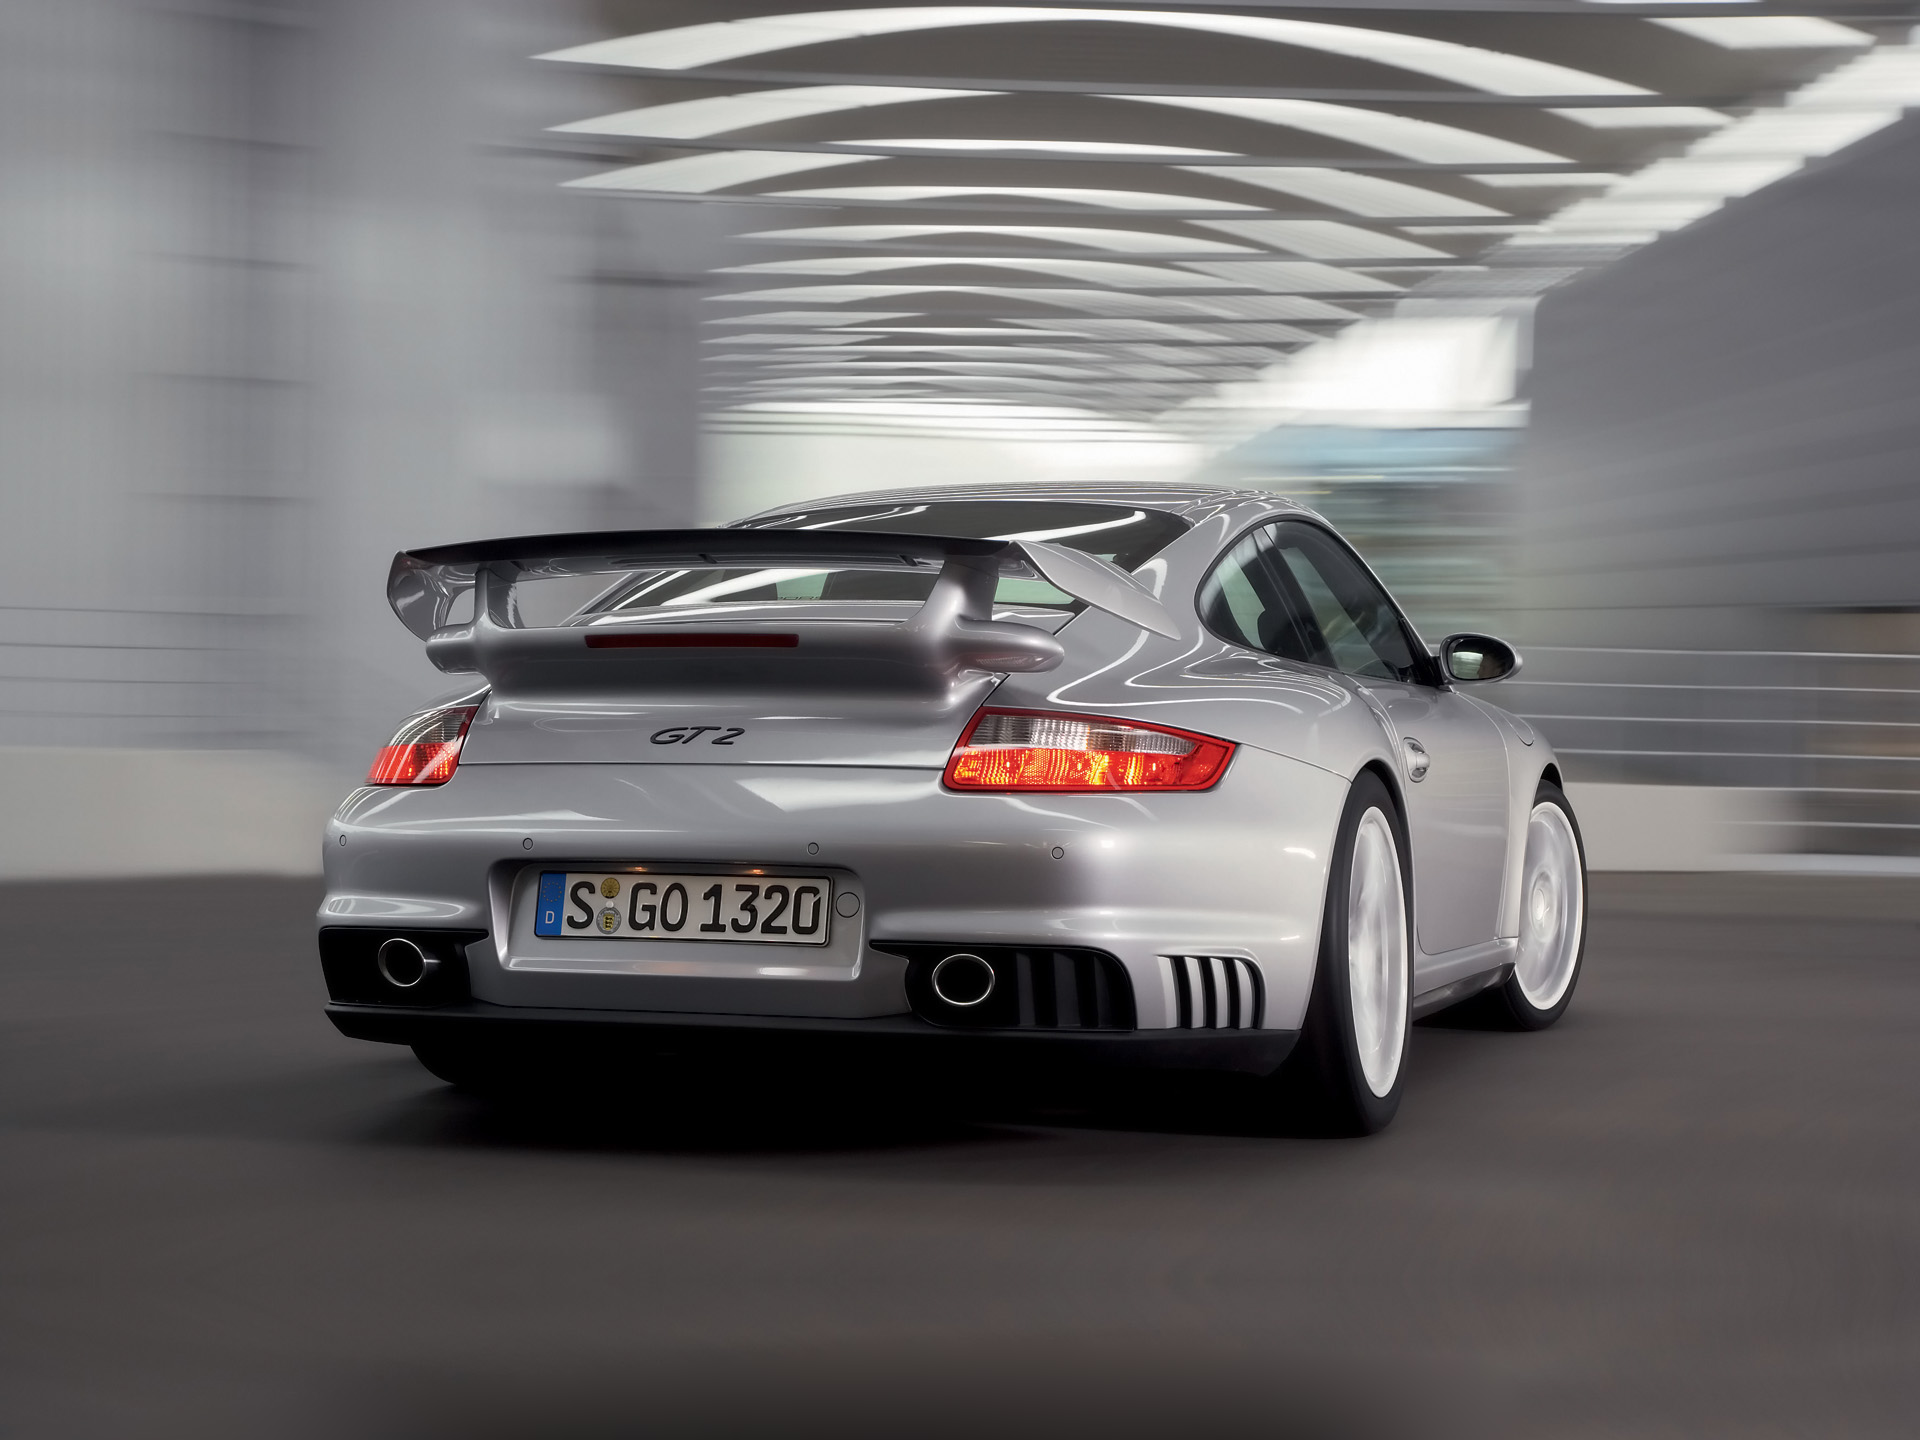  2008 Porsche 911 GT2 Wallpaper.